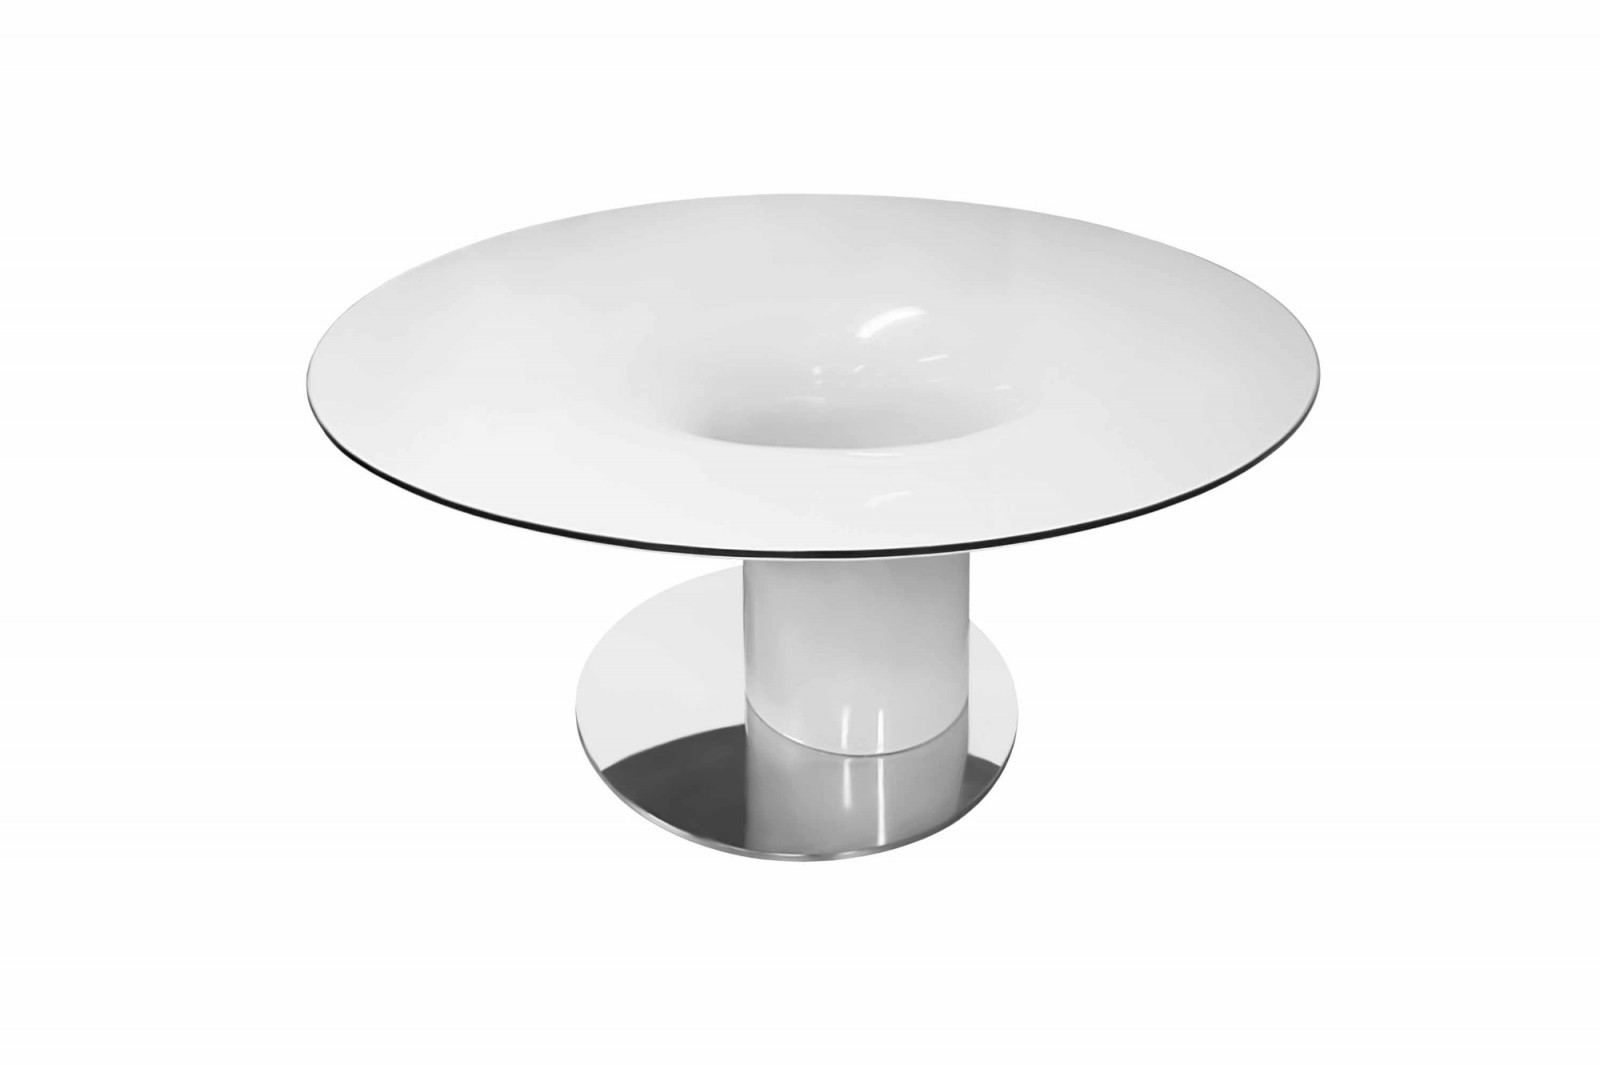 dining_table_elegant_modern_luxurious_white_high_gloss_glass_top_stainless_steel_base_jazz_gansk_2-814-1600-1400-100